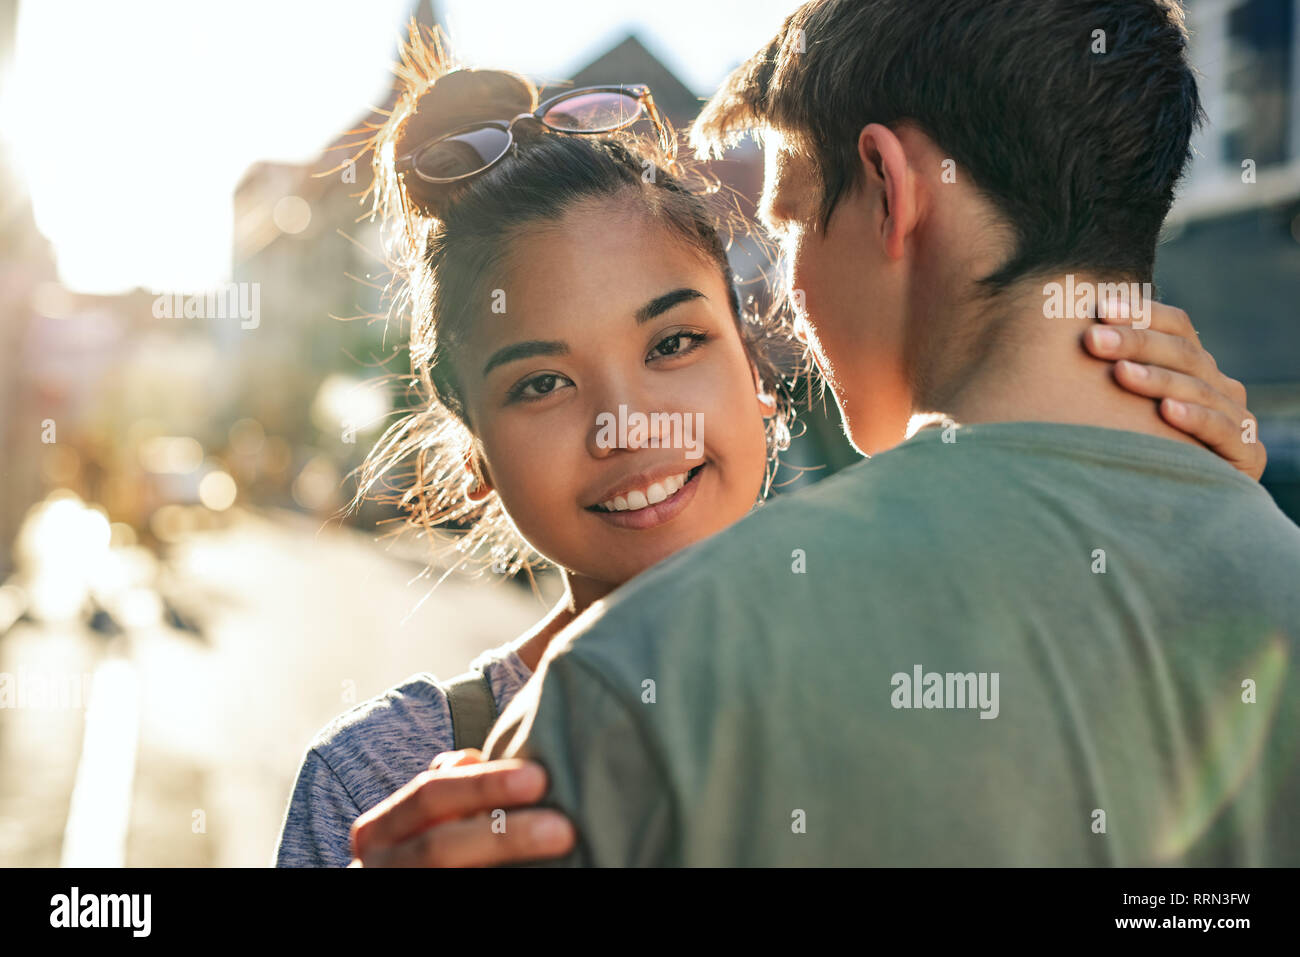 Lächelnde junge Frau ihrem Freund umarmen auf einer Straße der Stadt Stockfoto